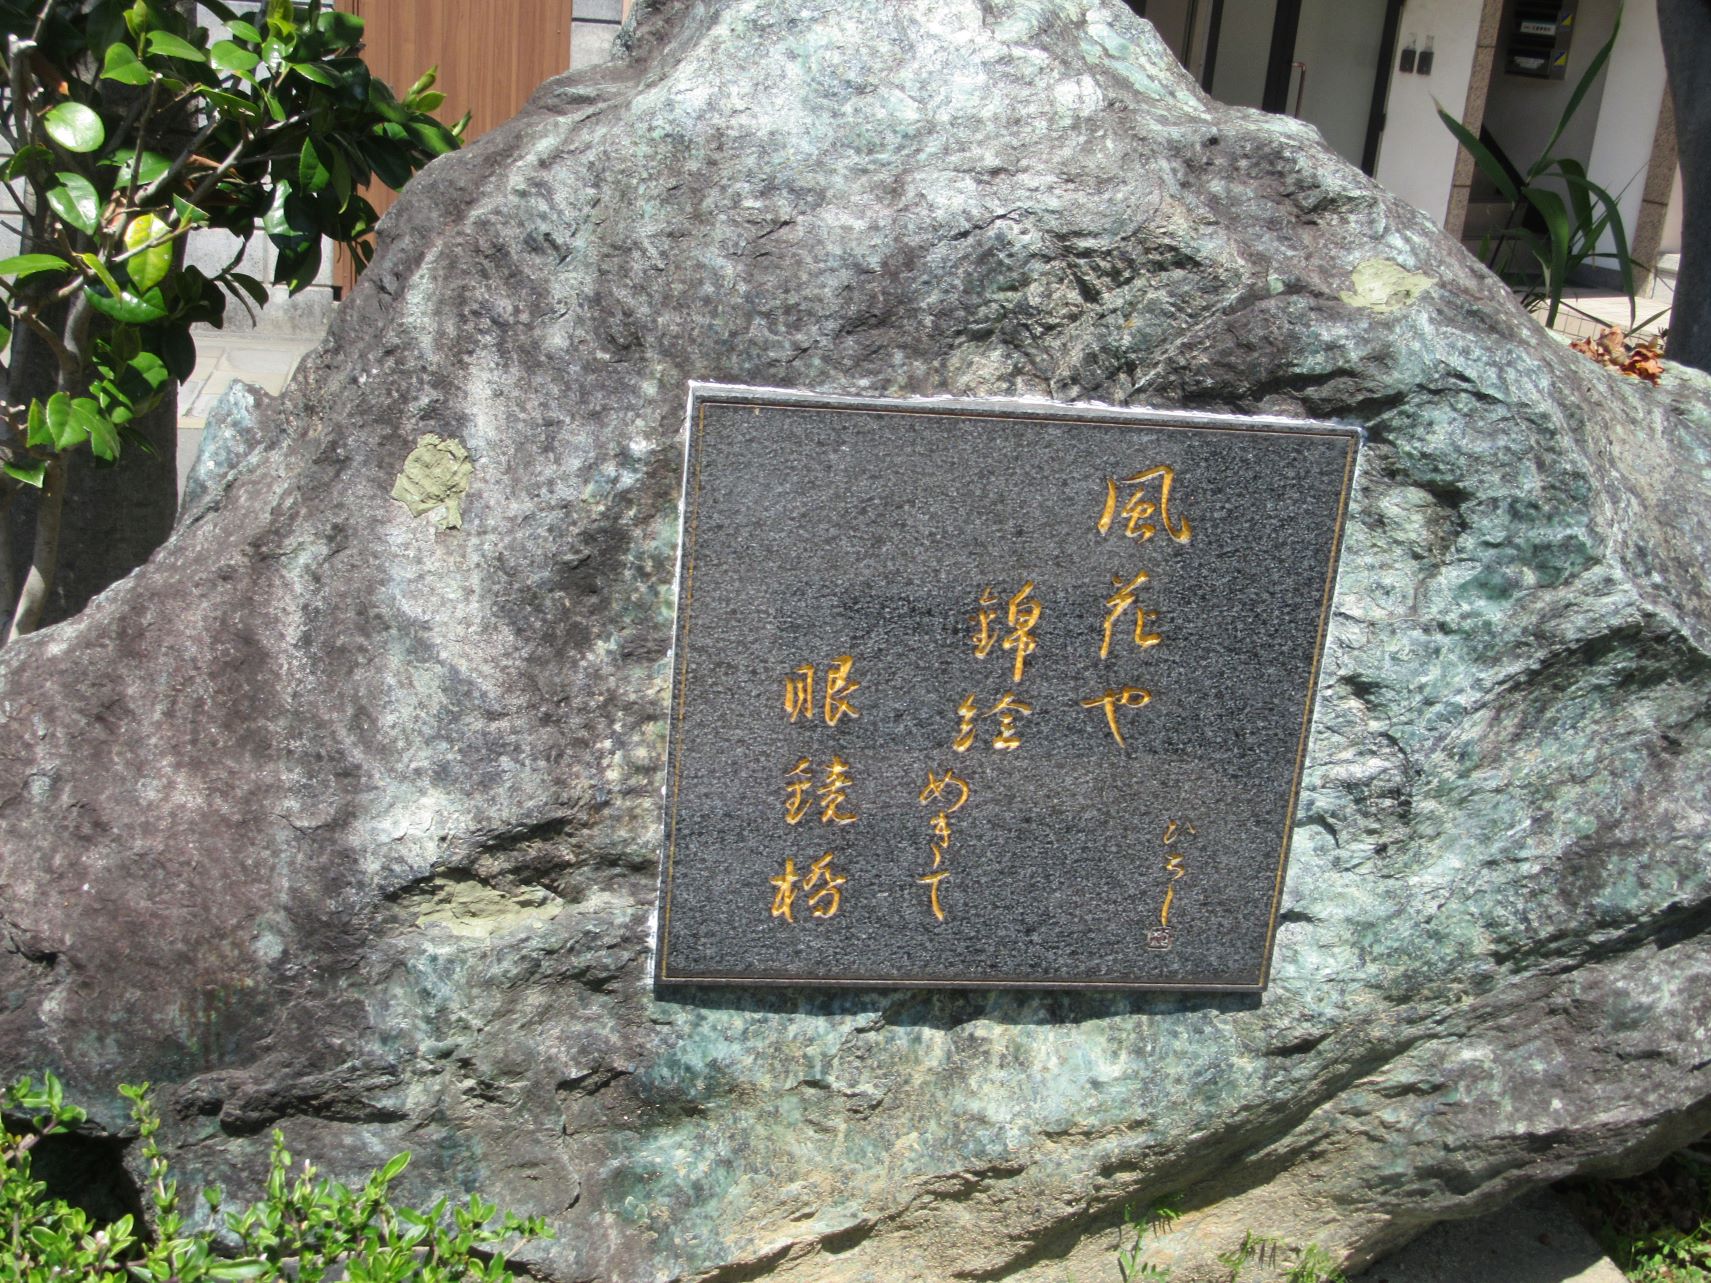 長崎県長崎市の眼鏡橋付近にて撮影した、下村ひろしという長崎市生まれの医師で俳人だった人物の碑です。